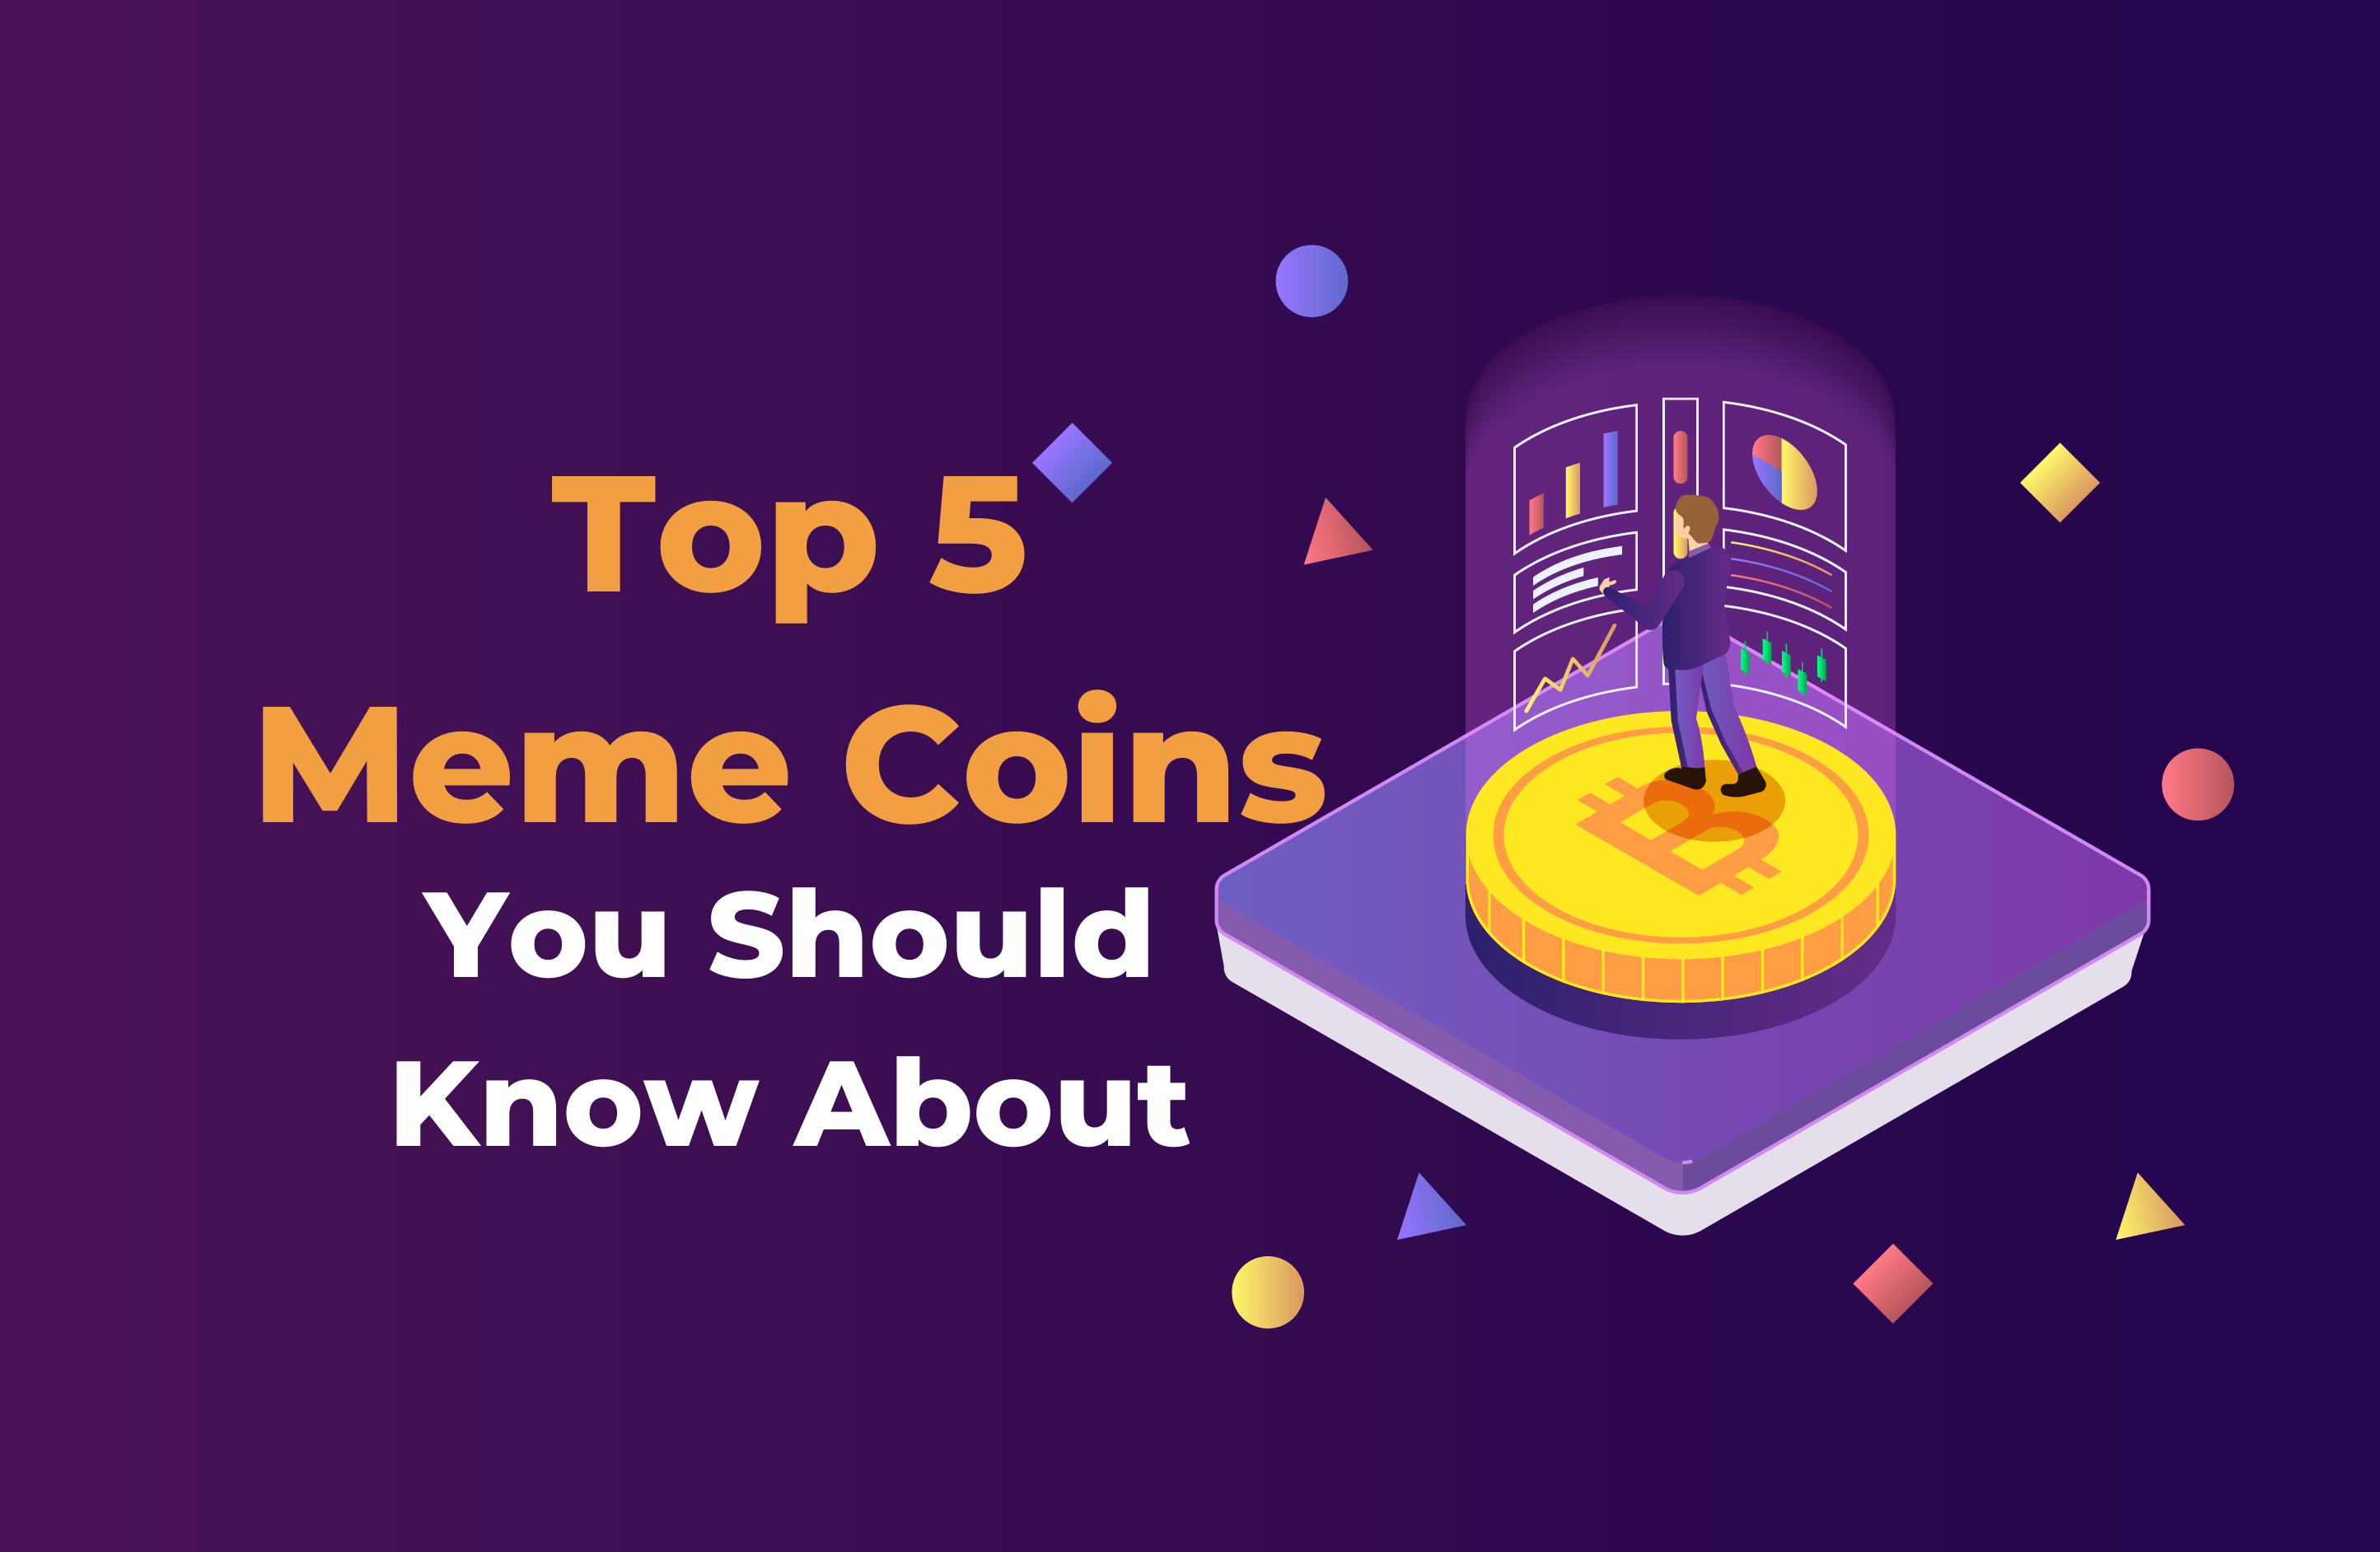 Top 5 Meme Coins